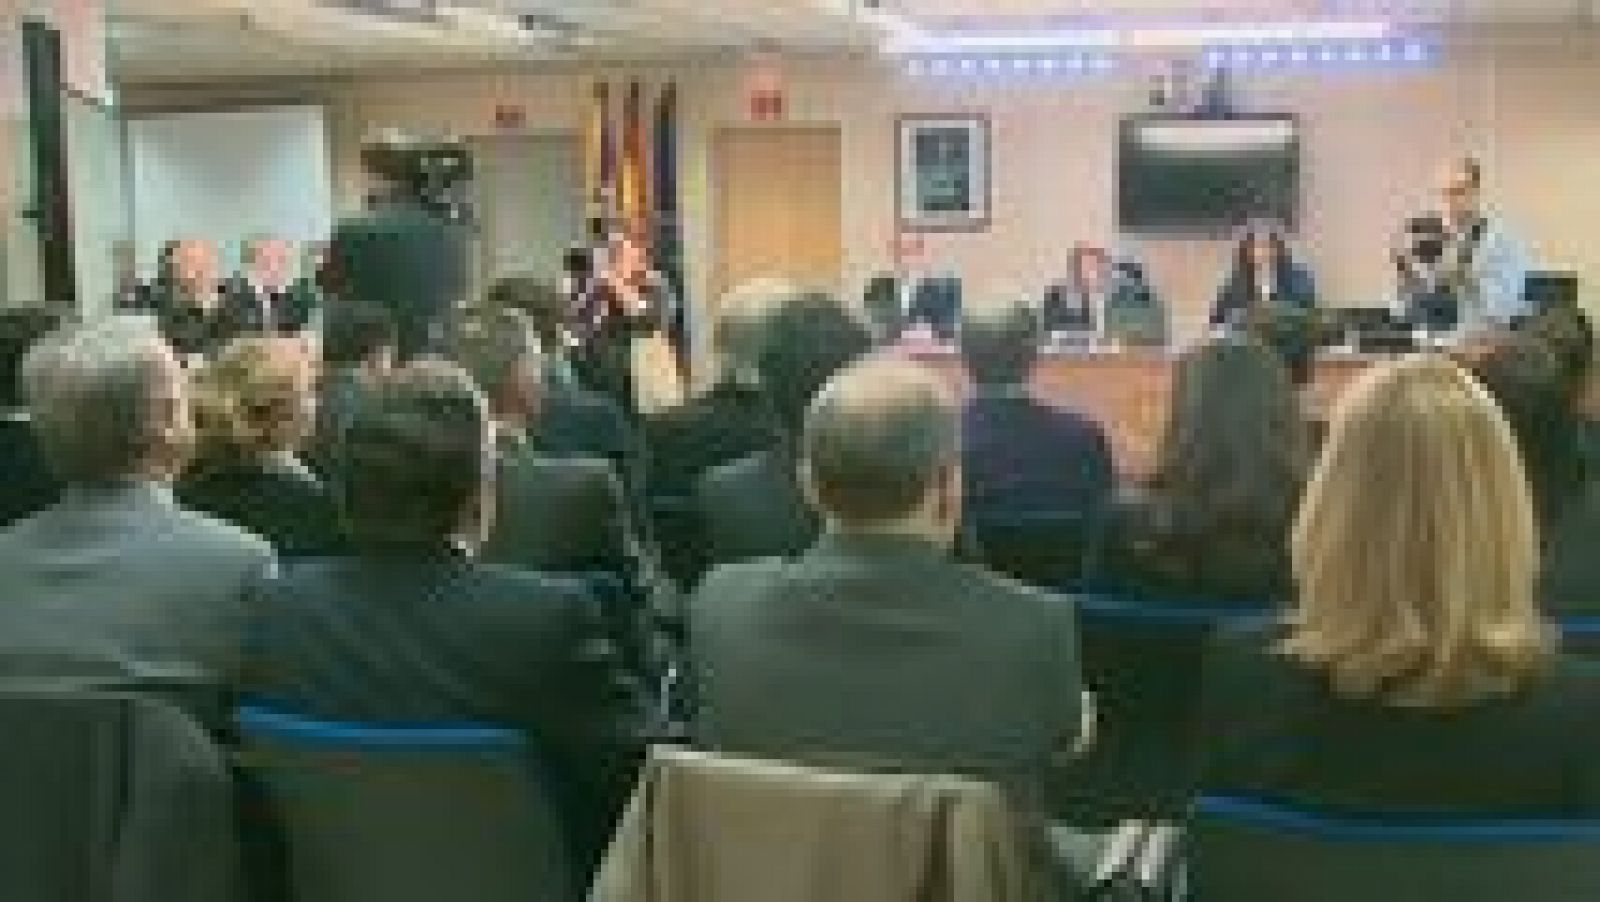 L'informatiu - Comunitat Valenciana: L'Informatiu - Comunitat Valenciana 2 - 11/02/16 | RTVE Play